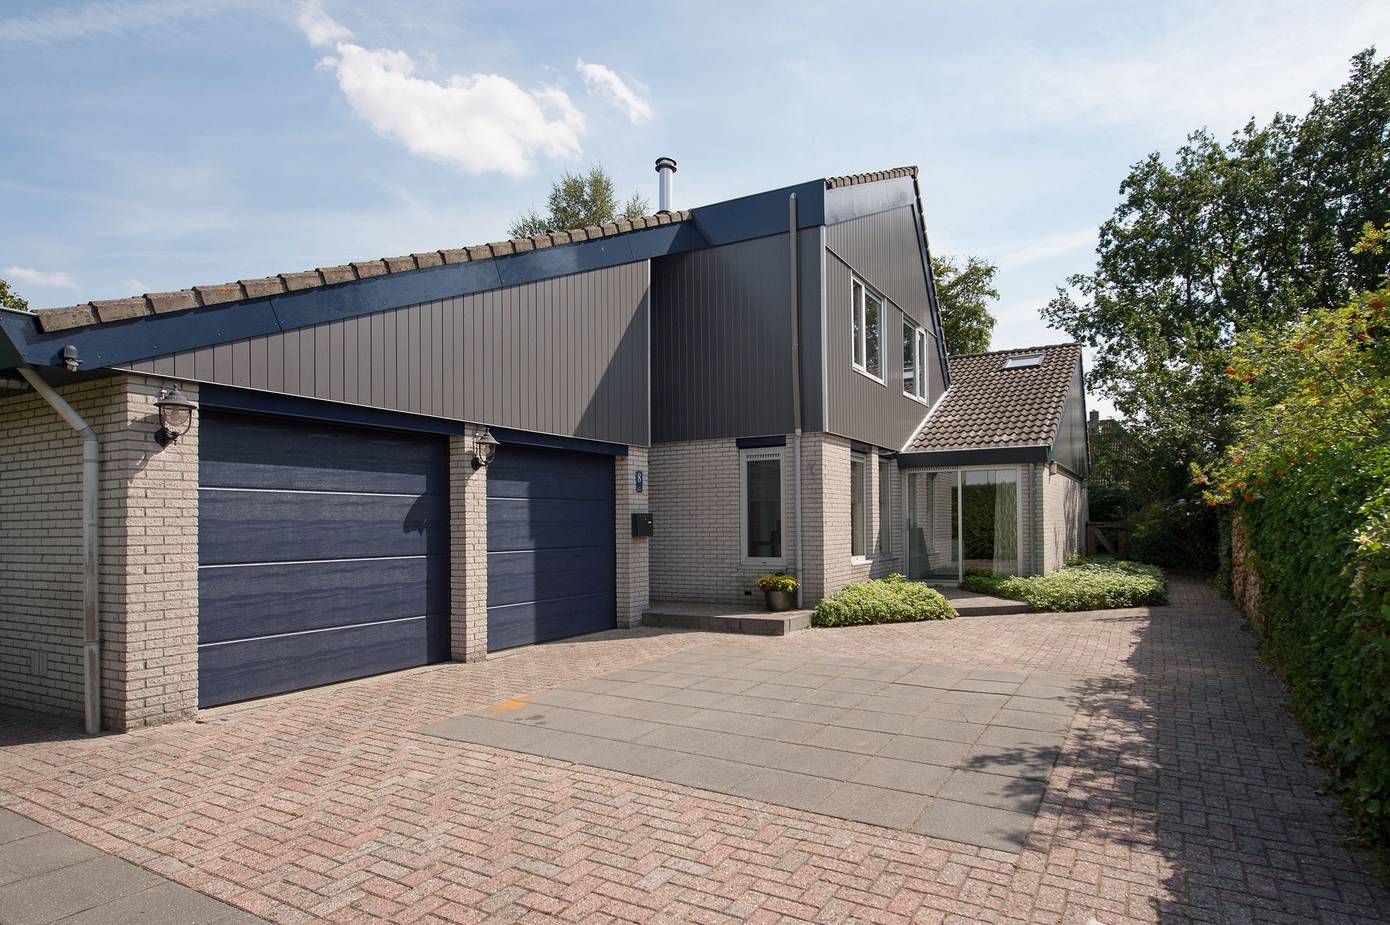 Te koop in Assen: zeer ruime vrijstaande woning met dubbele garage